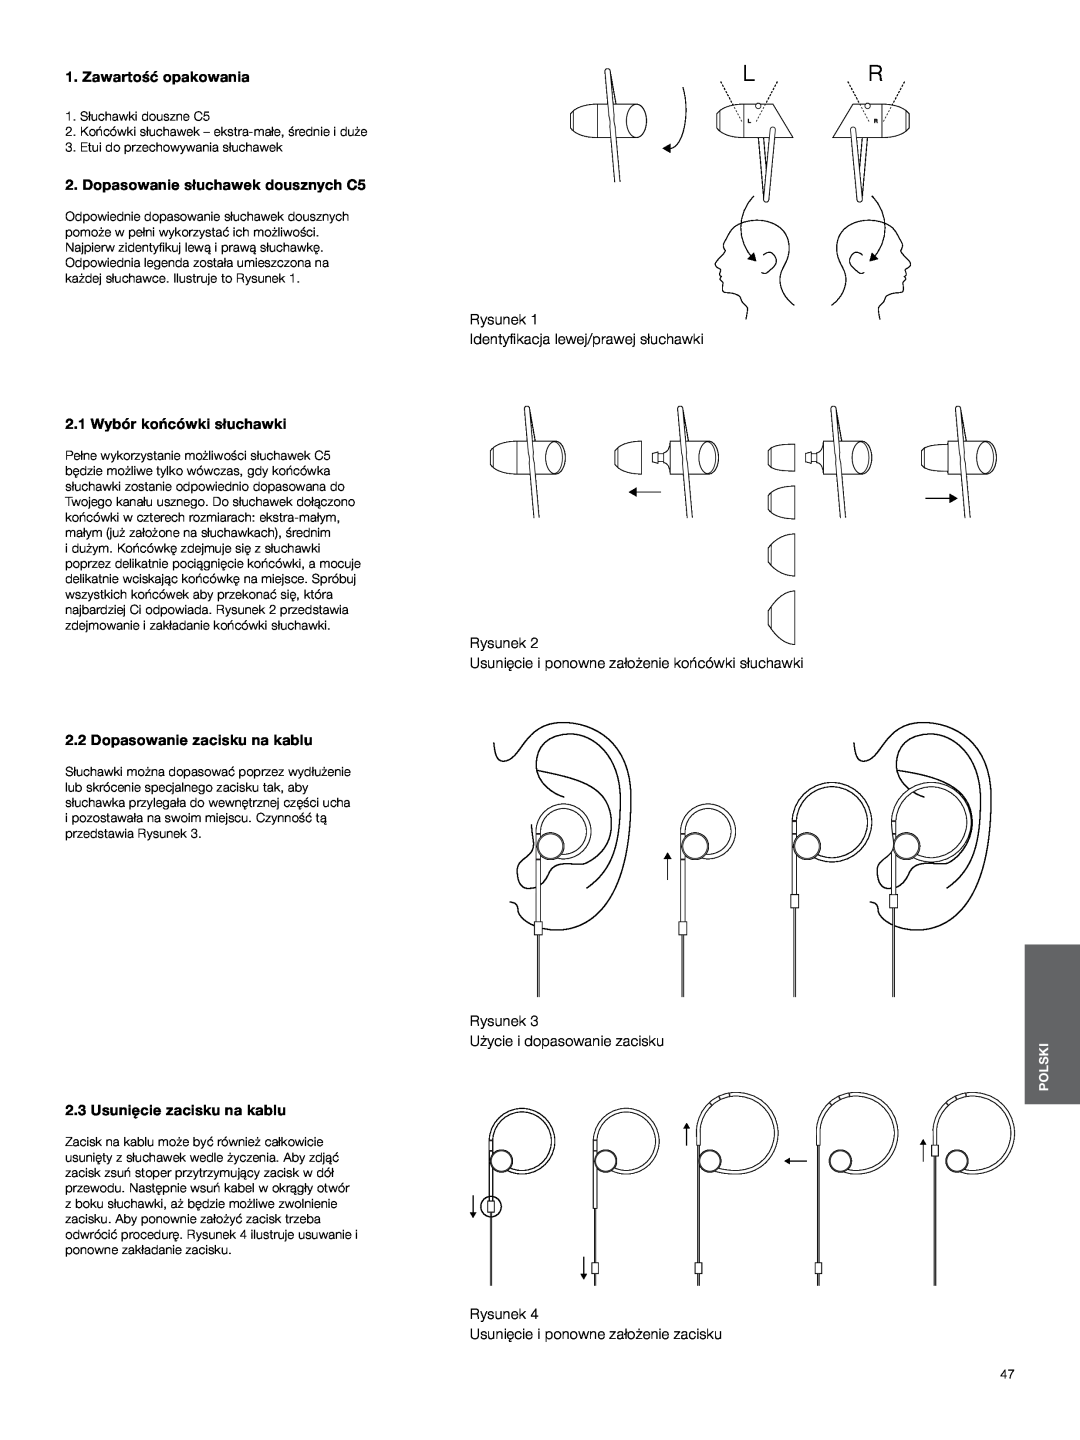 Bowers & Wilkins Zawartość opakowania, Dopasowanie słuchawek dousznych C5, Rysunek Identyfikacja lewej/prawej słuchawki 